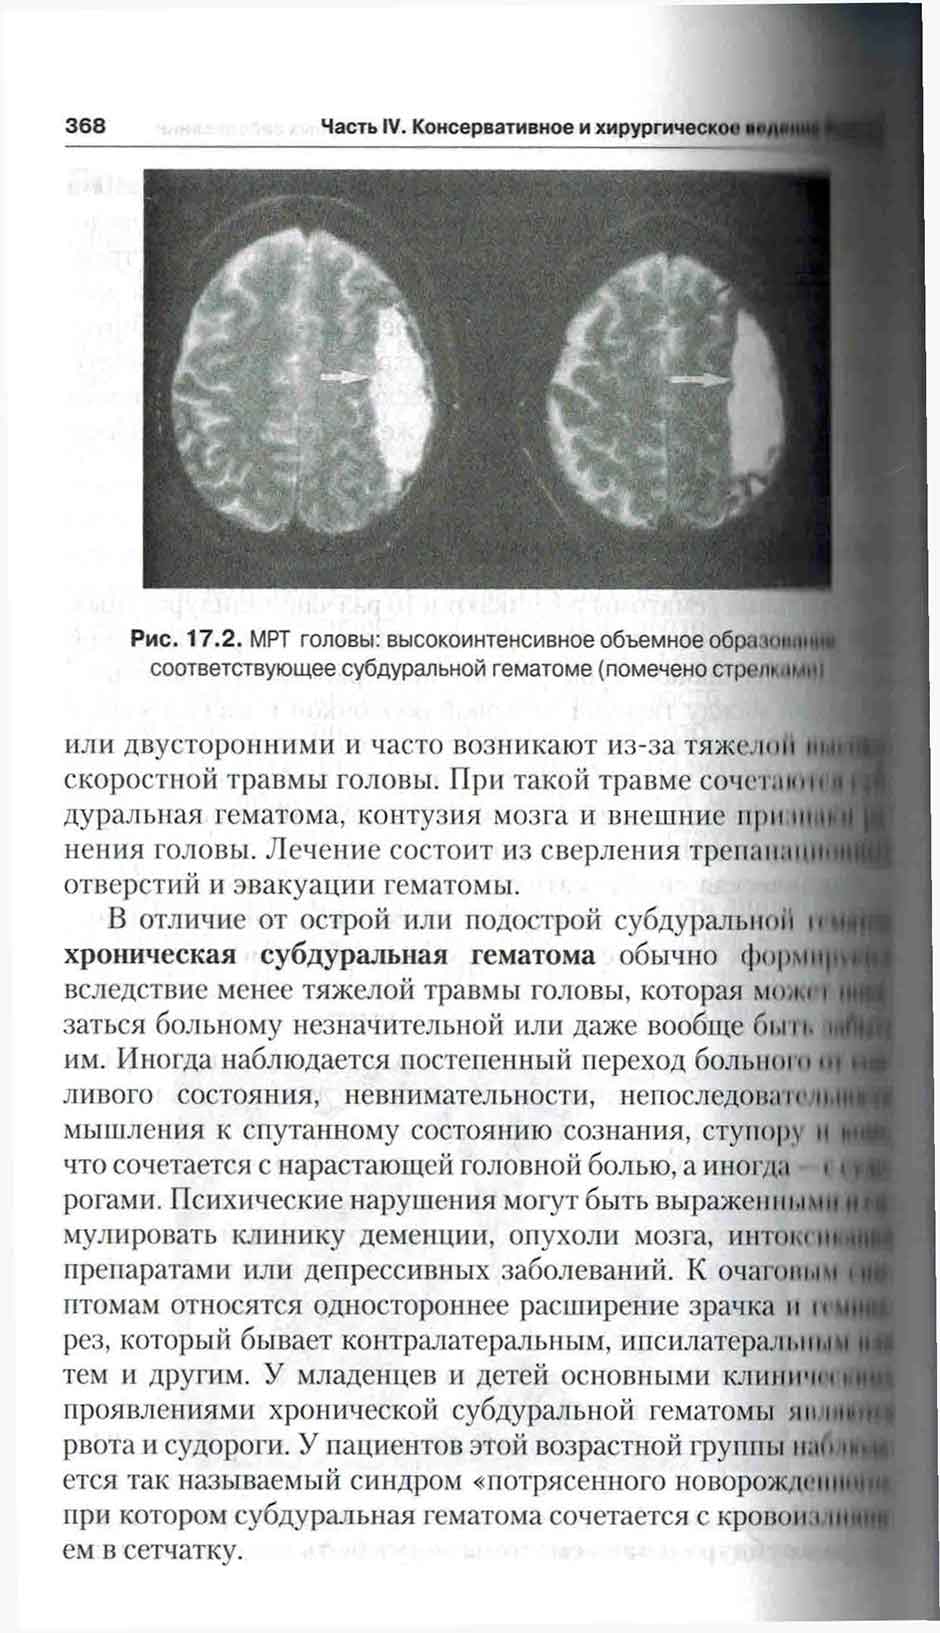 Рис. 17.2. MPT головы: высокоинтенсивное объемное образование соответствующее субдуральной гематоме 